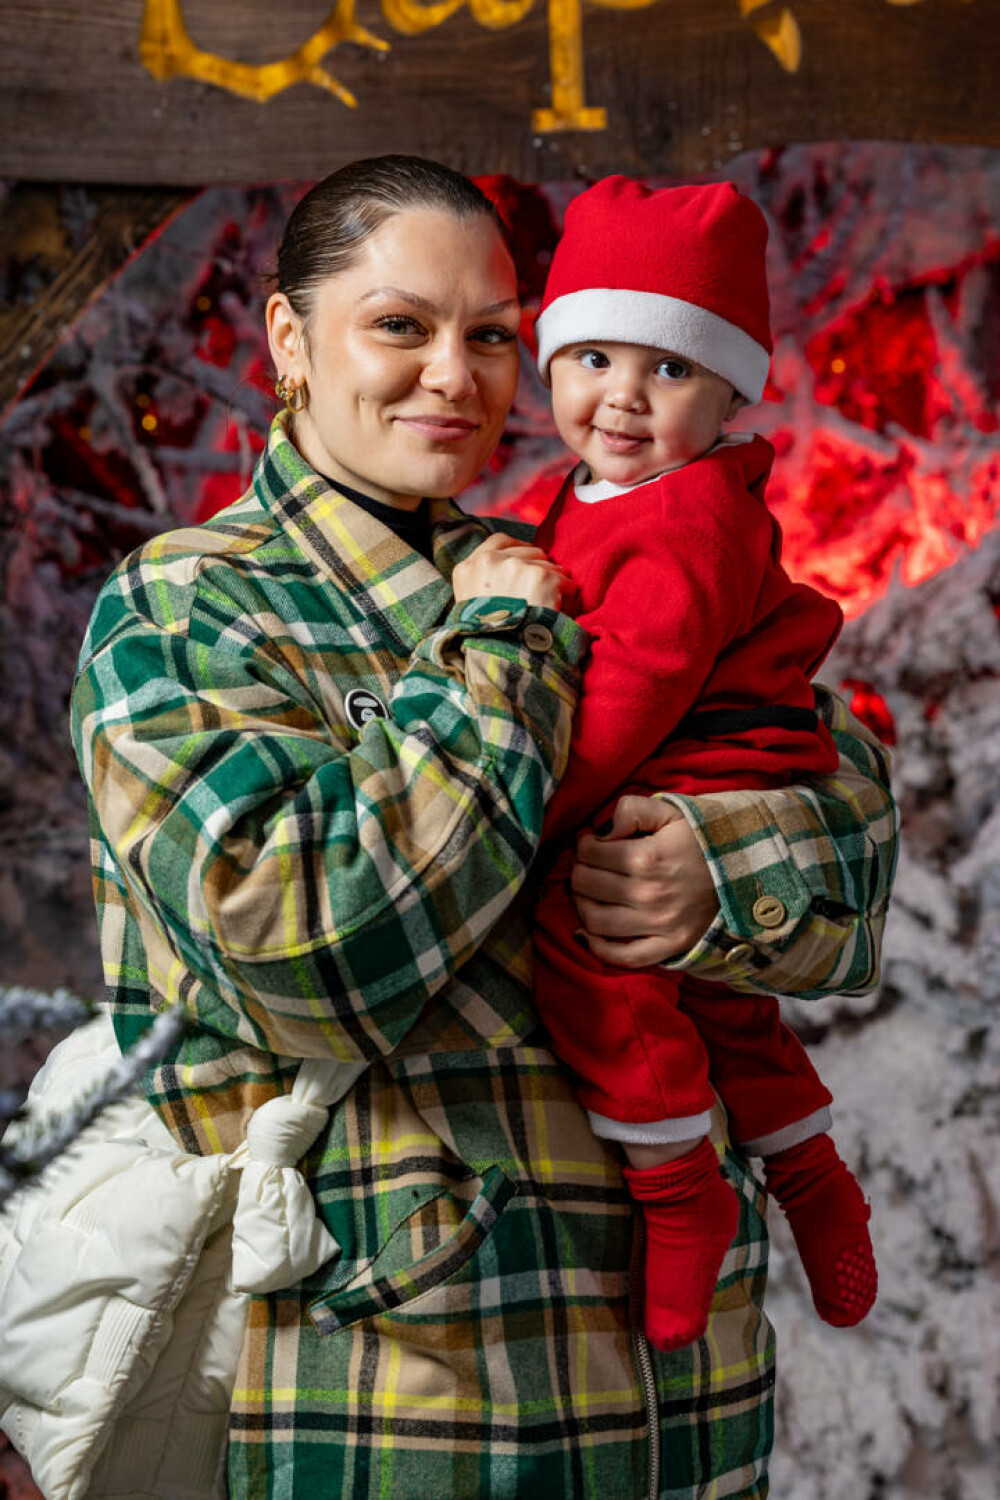 Imagini emoționante cu Jessie J și fiul ei. Cântăreața a fost la casa lui Moș Crăciun alături de familia ei. FOTO - Imaginea 6